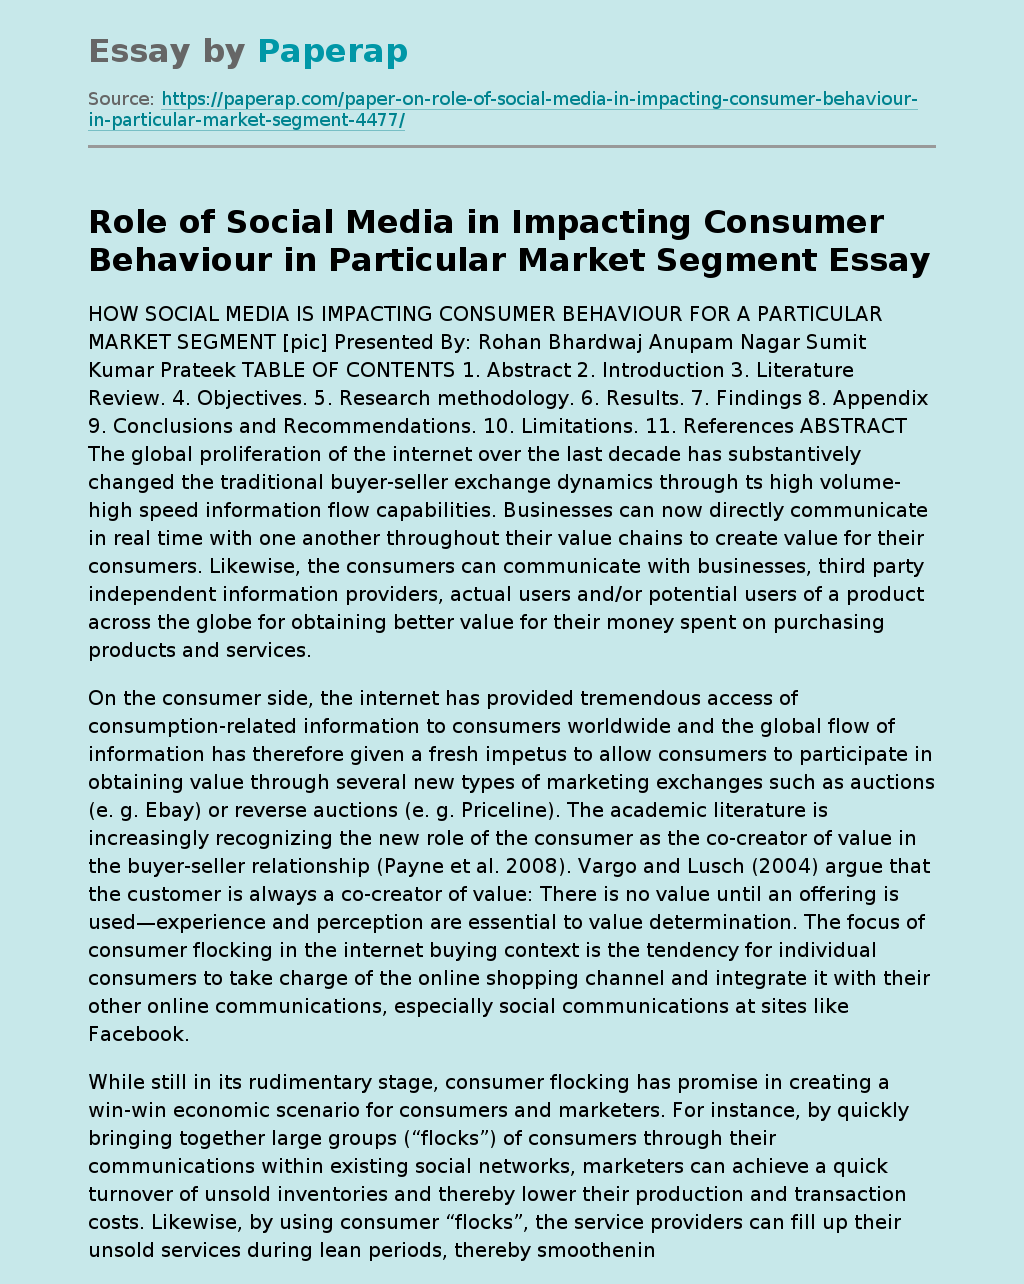 Role of Social Media in Impacting Consumer Behaviour in Particular Market Segment